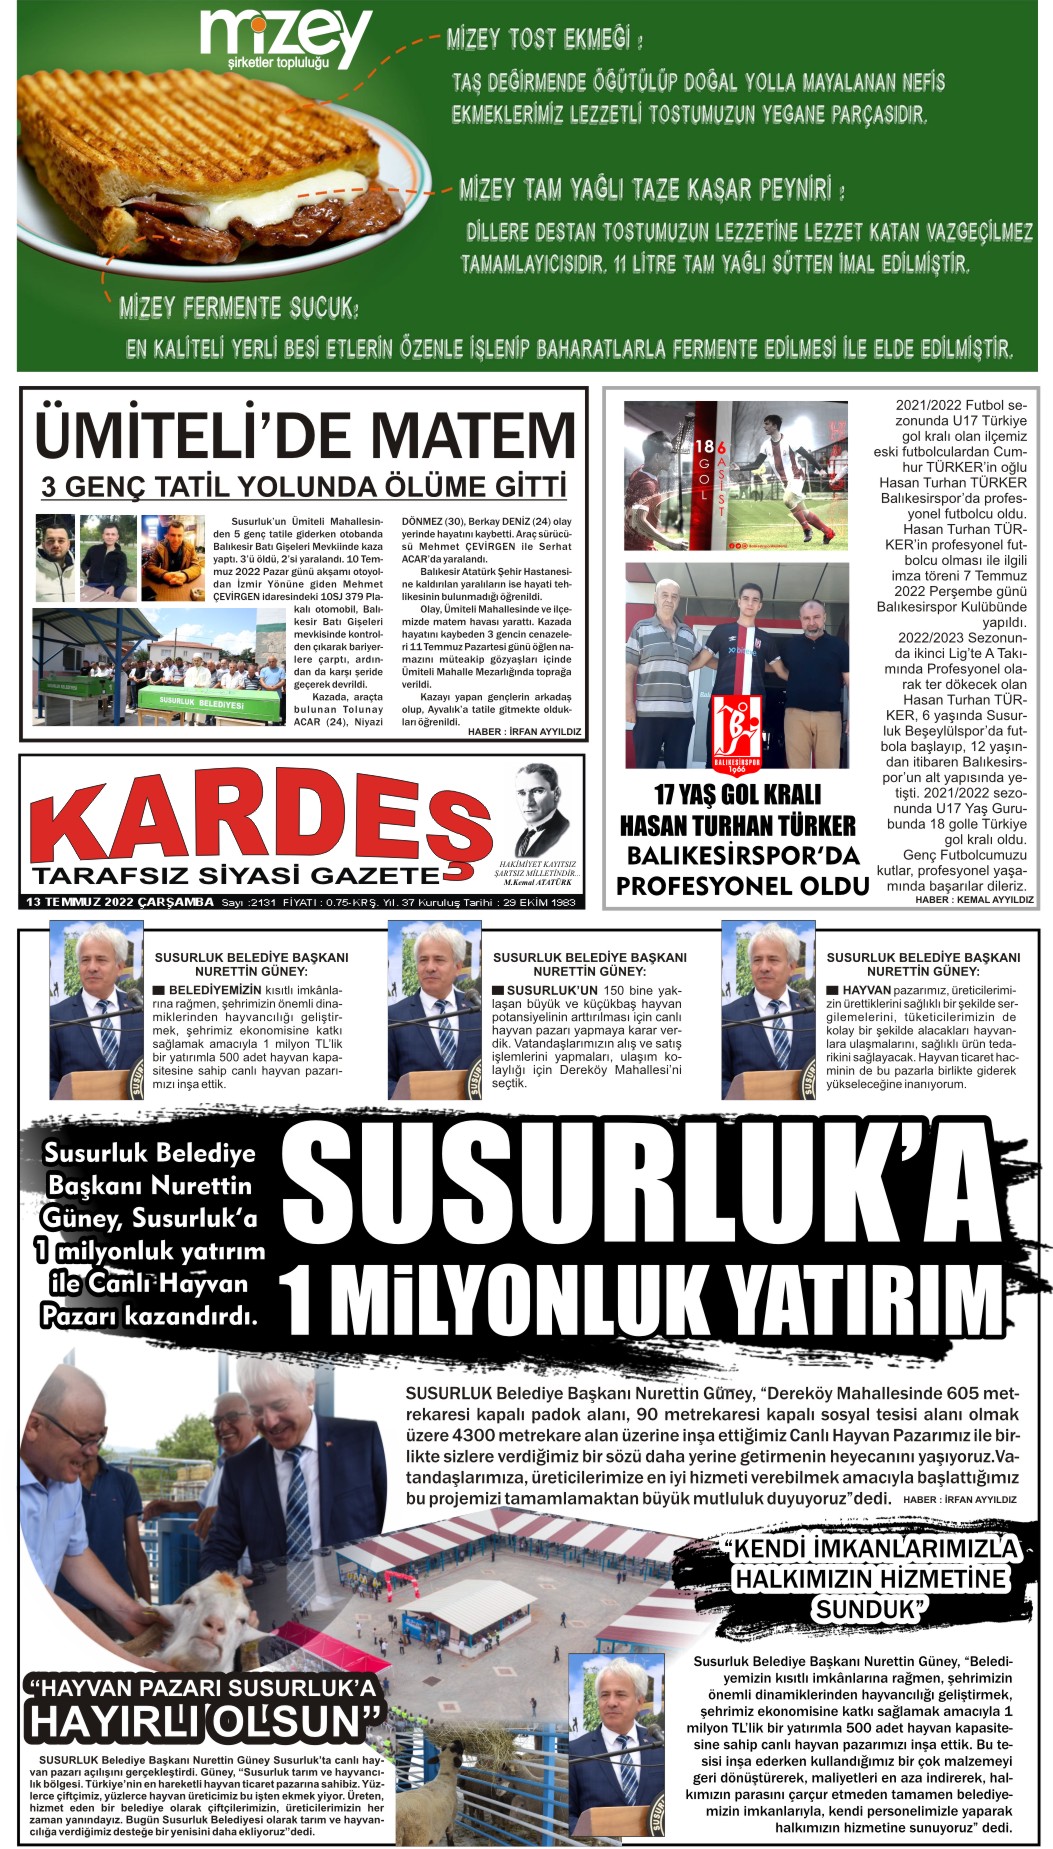 13.07.2022 Tarihli Kardeş Gazetesi Sayfa 1